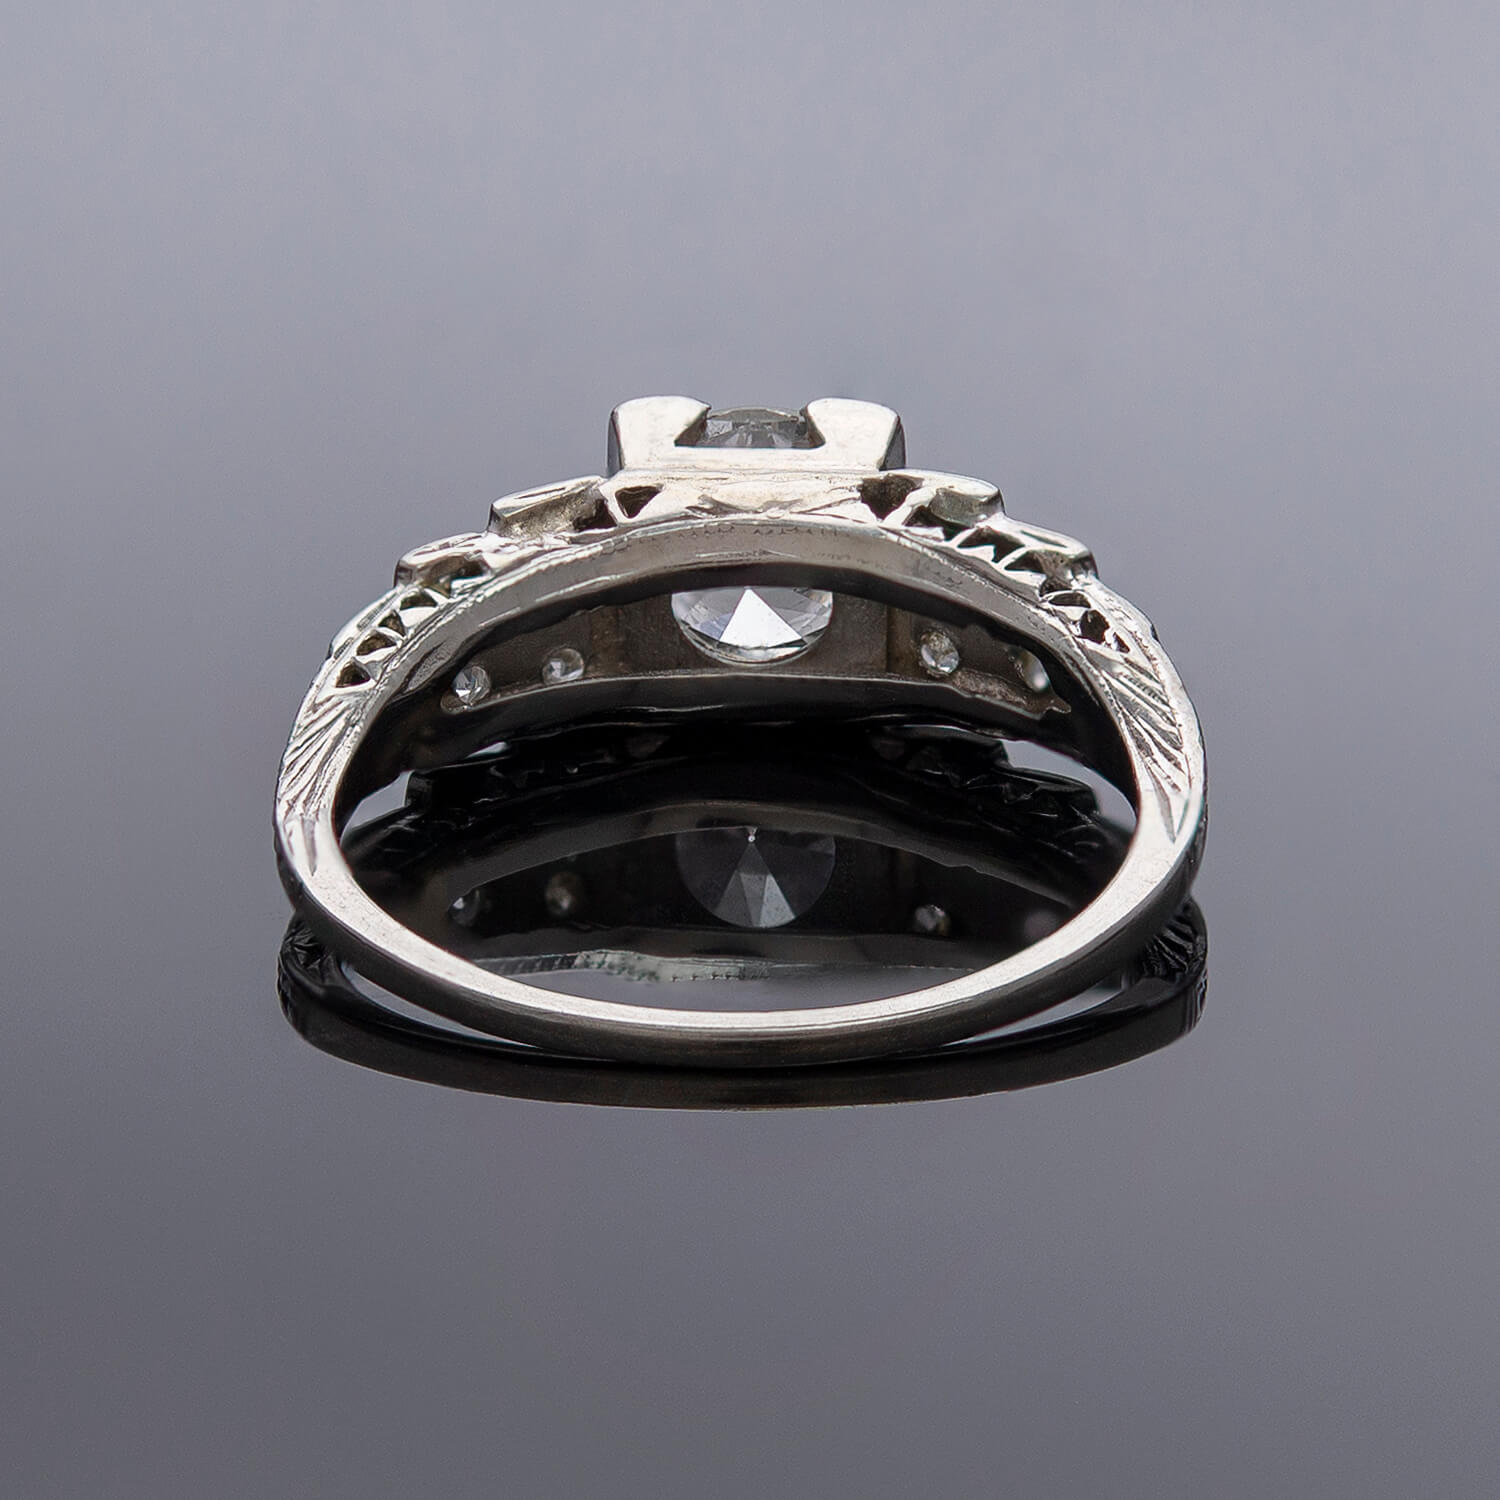 Art Deco Platinum Diamond Engagement Ring .82ct Center